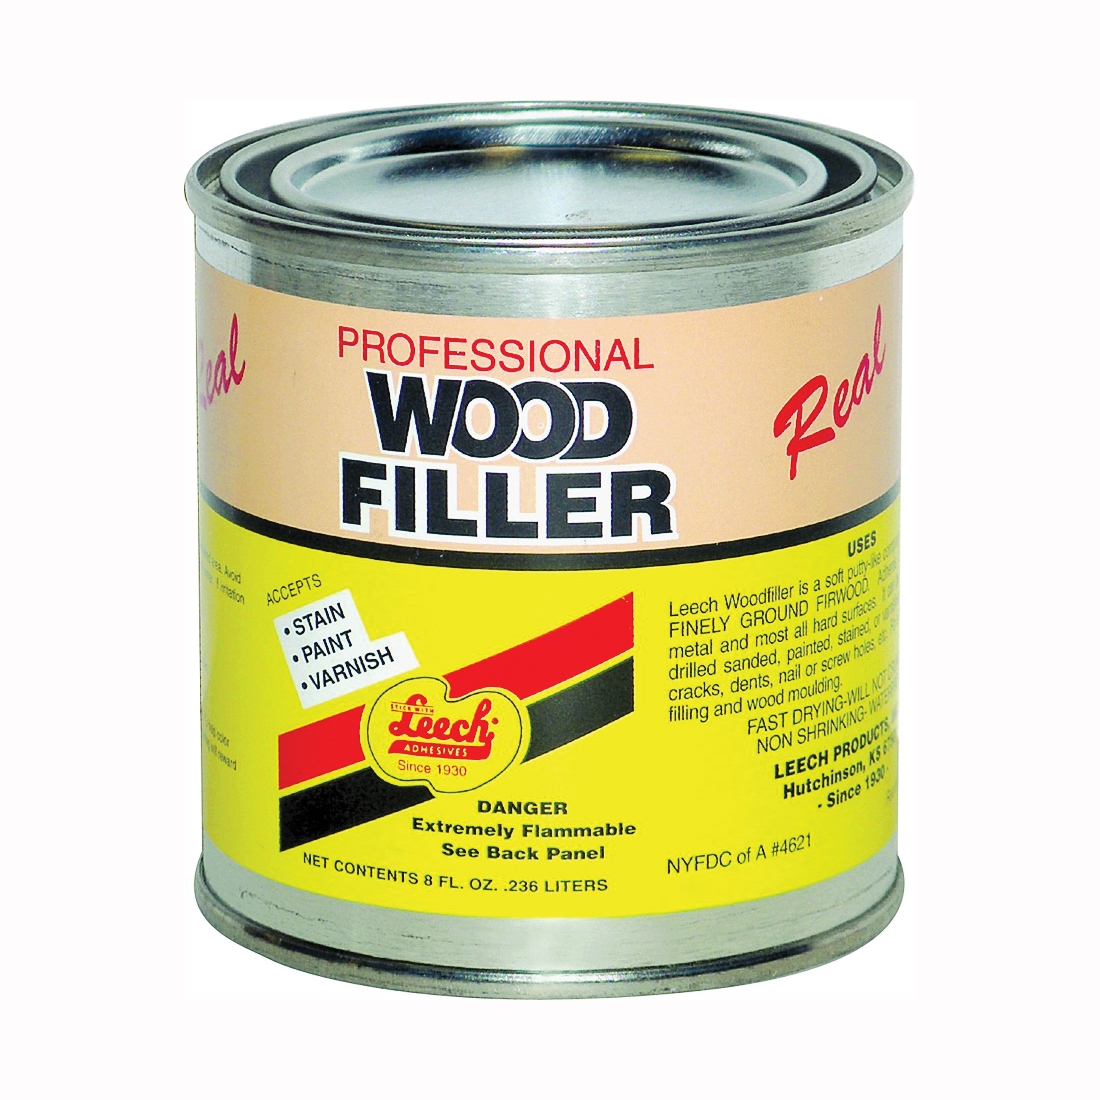 LWF-68 Wood Filler, Liquid, Solvent, Natural, 8 fl-oz Can